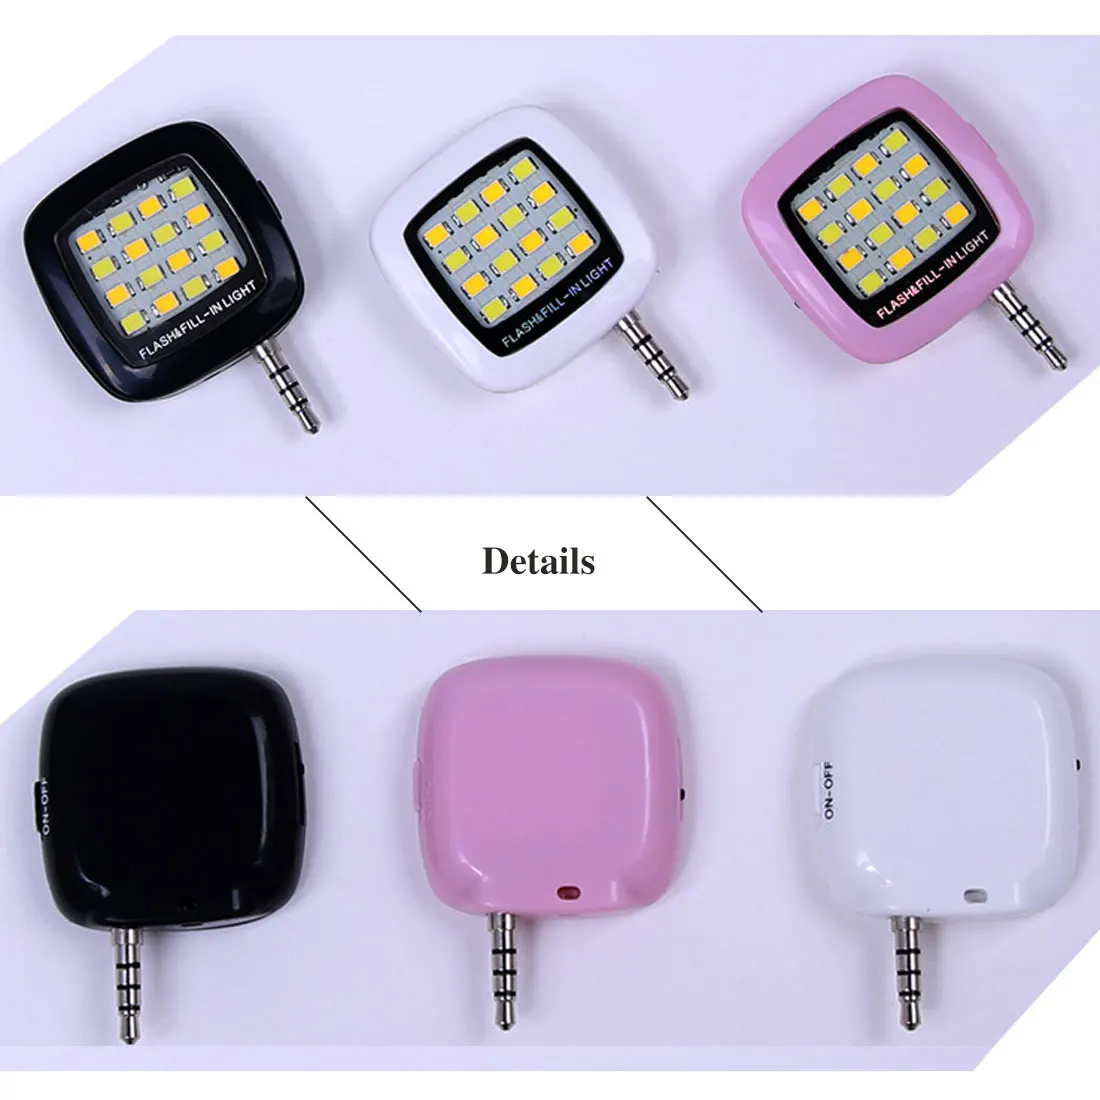 Etmakit мобильный телефон светодиодный светильник-вспышка Регулируемый заполняющий светильник для iPhone 6 6s и телефонов Android Мини селфи синхронизирующий фонарь 16 Светодиодный